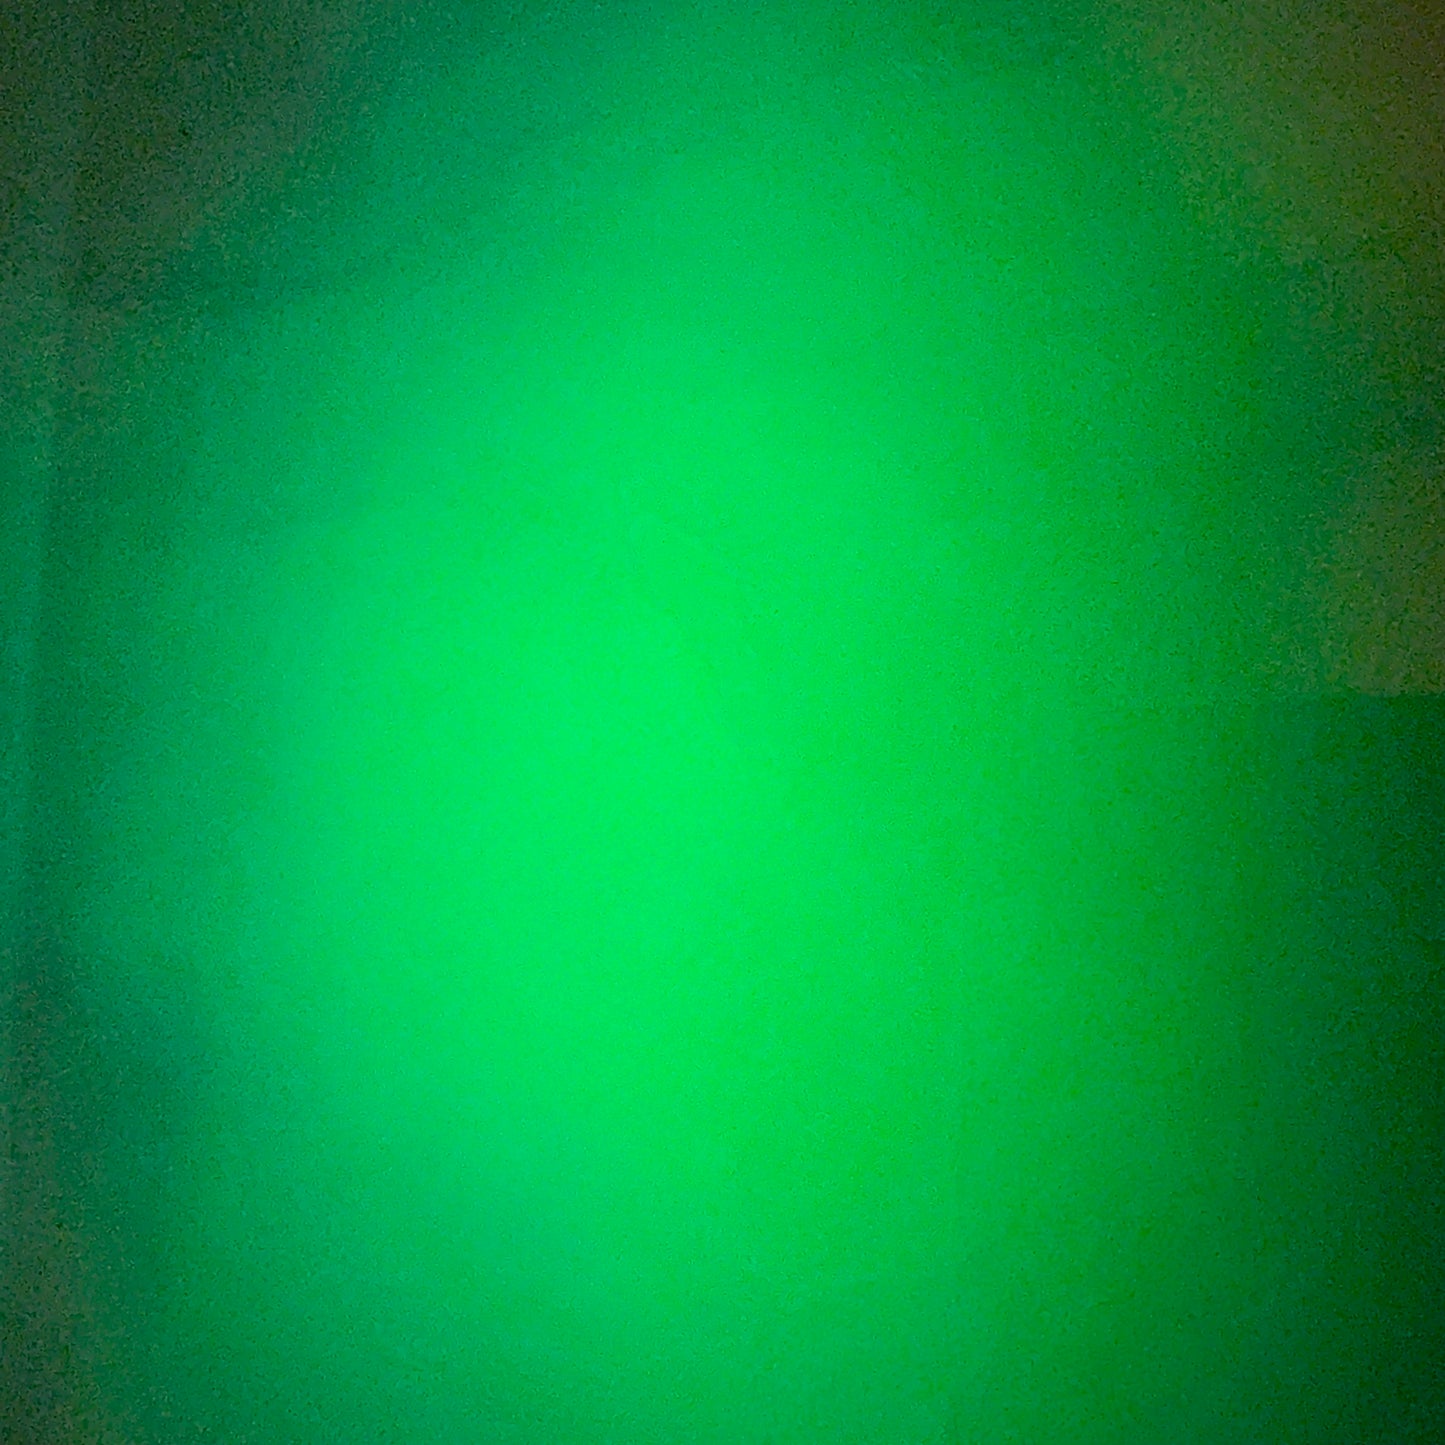 GITD HoloChrome Green